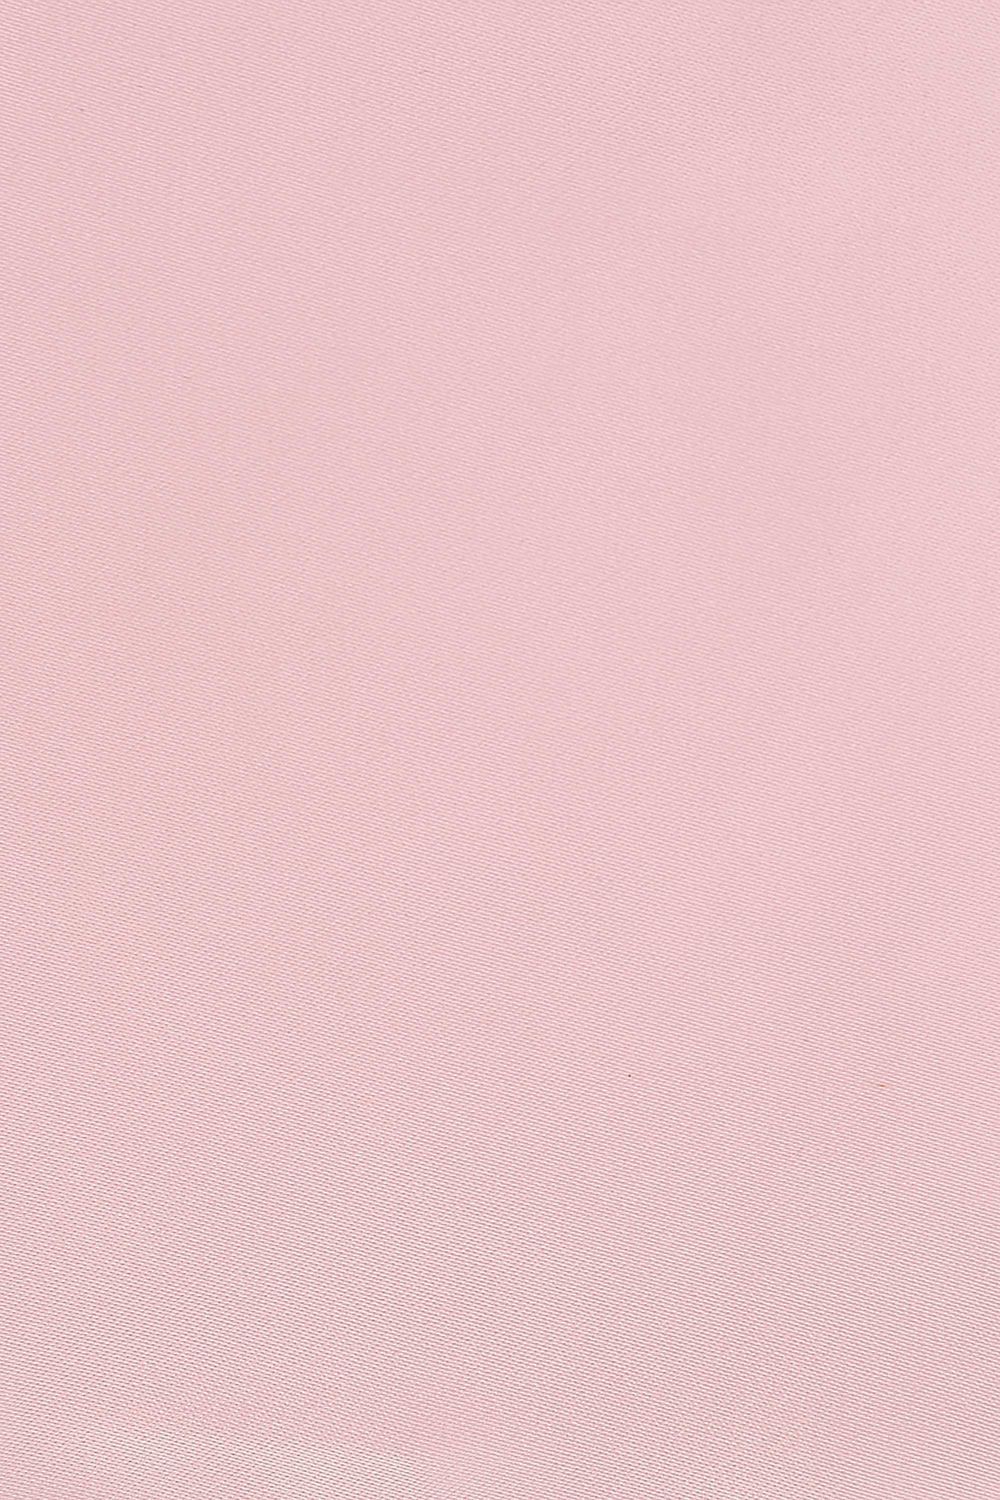 Plain Pastel pink satin swatch card